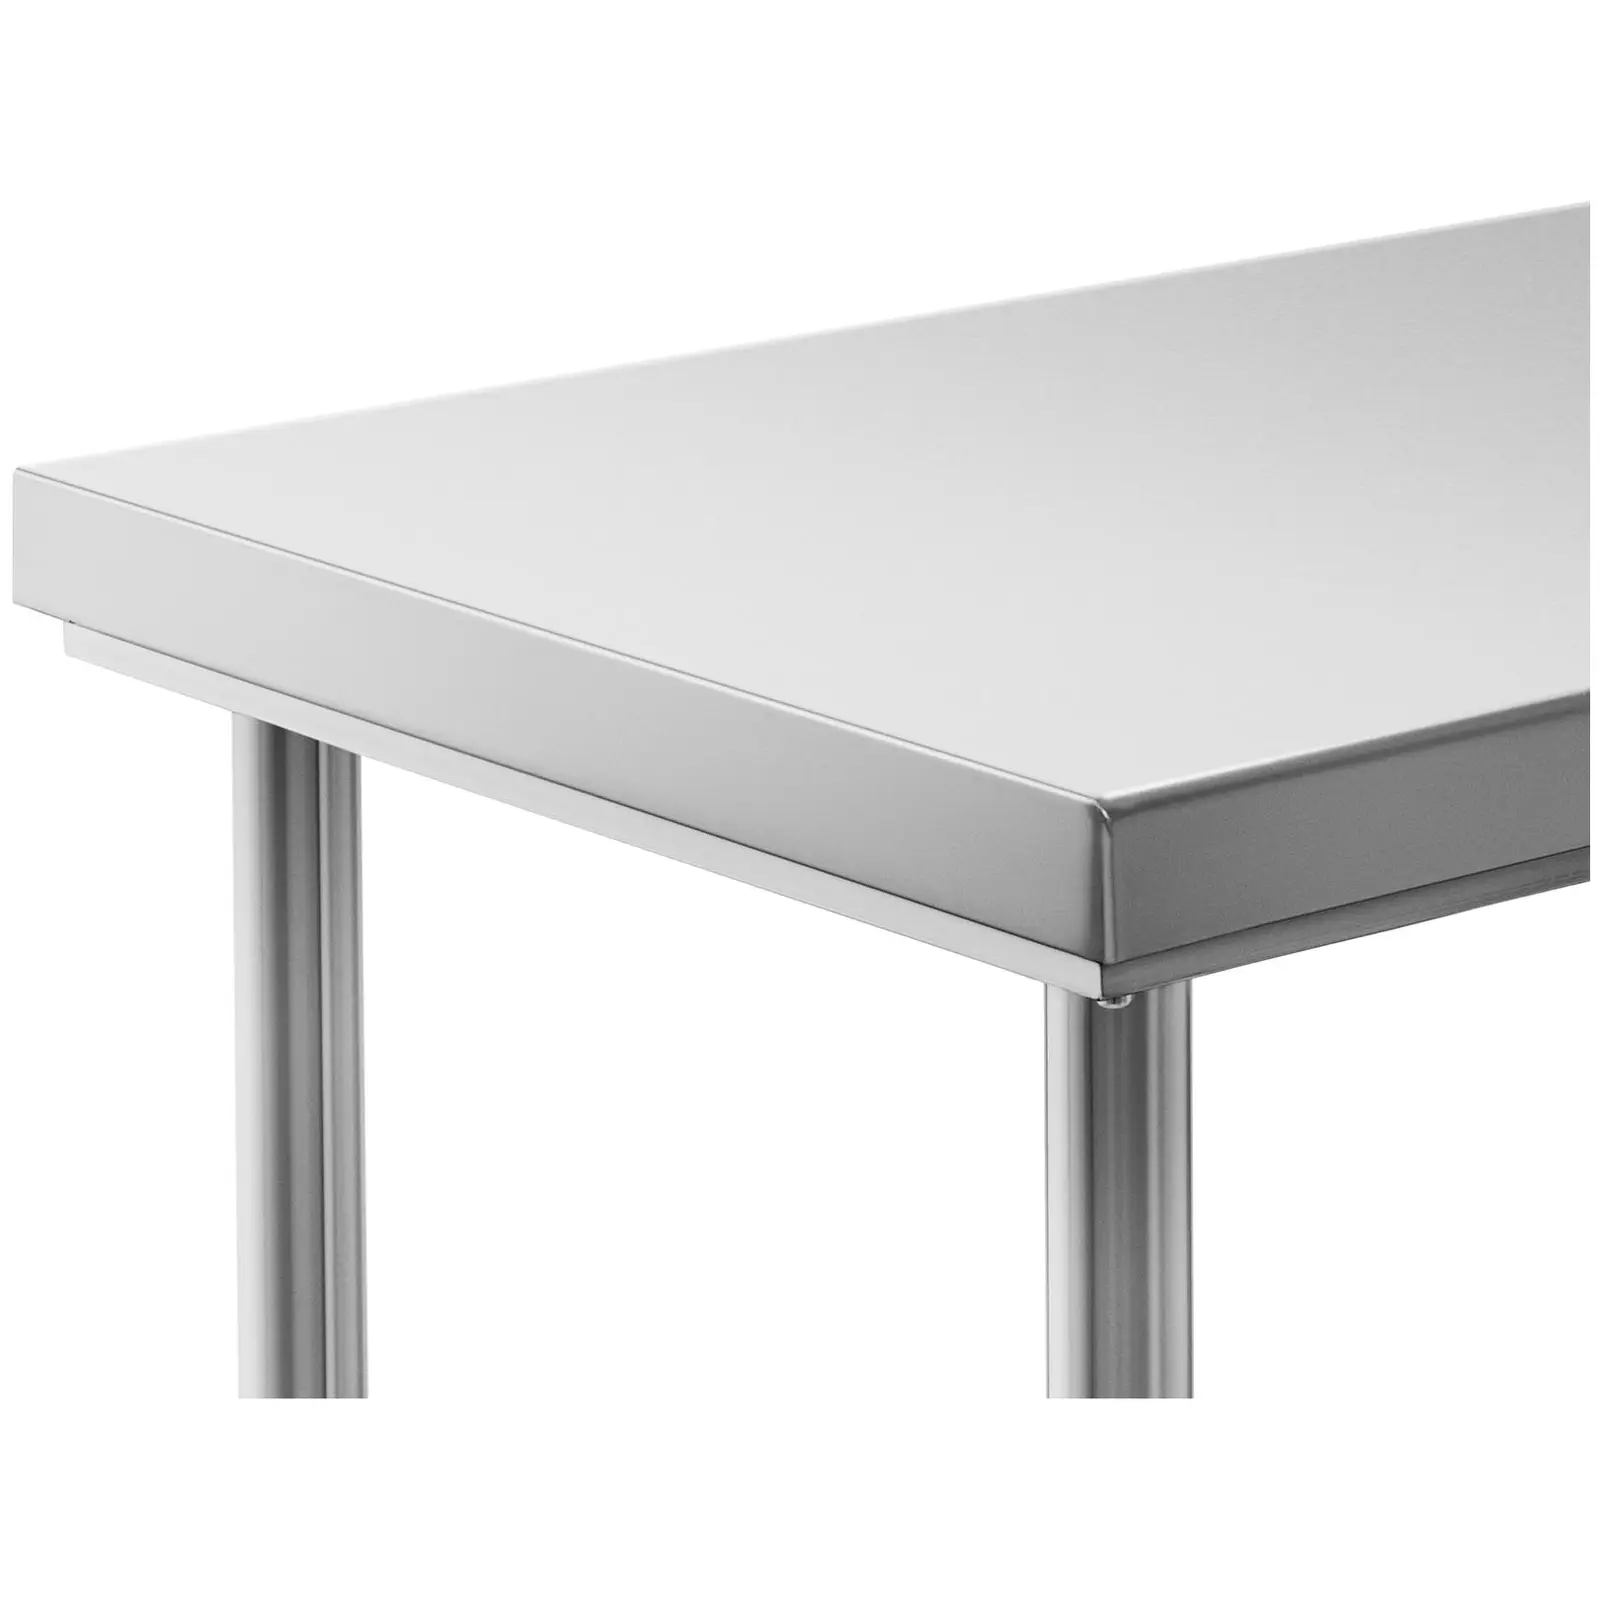 Rozsdamentes acél asztal - 100 x 70 cm - teherbírás: 120 kg - Royal Catering